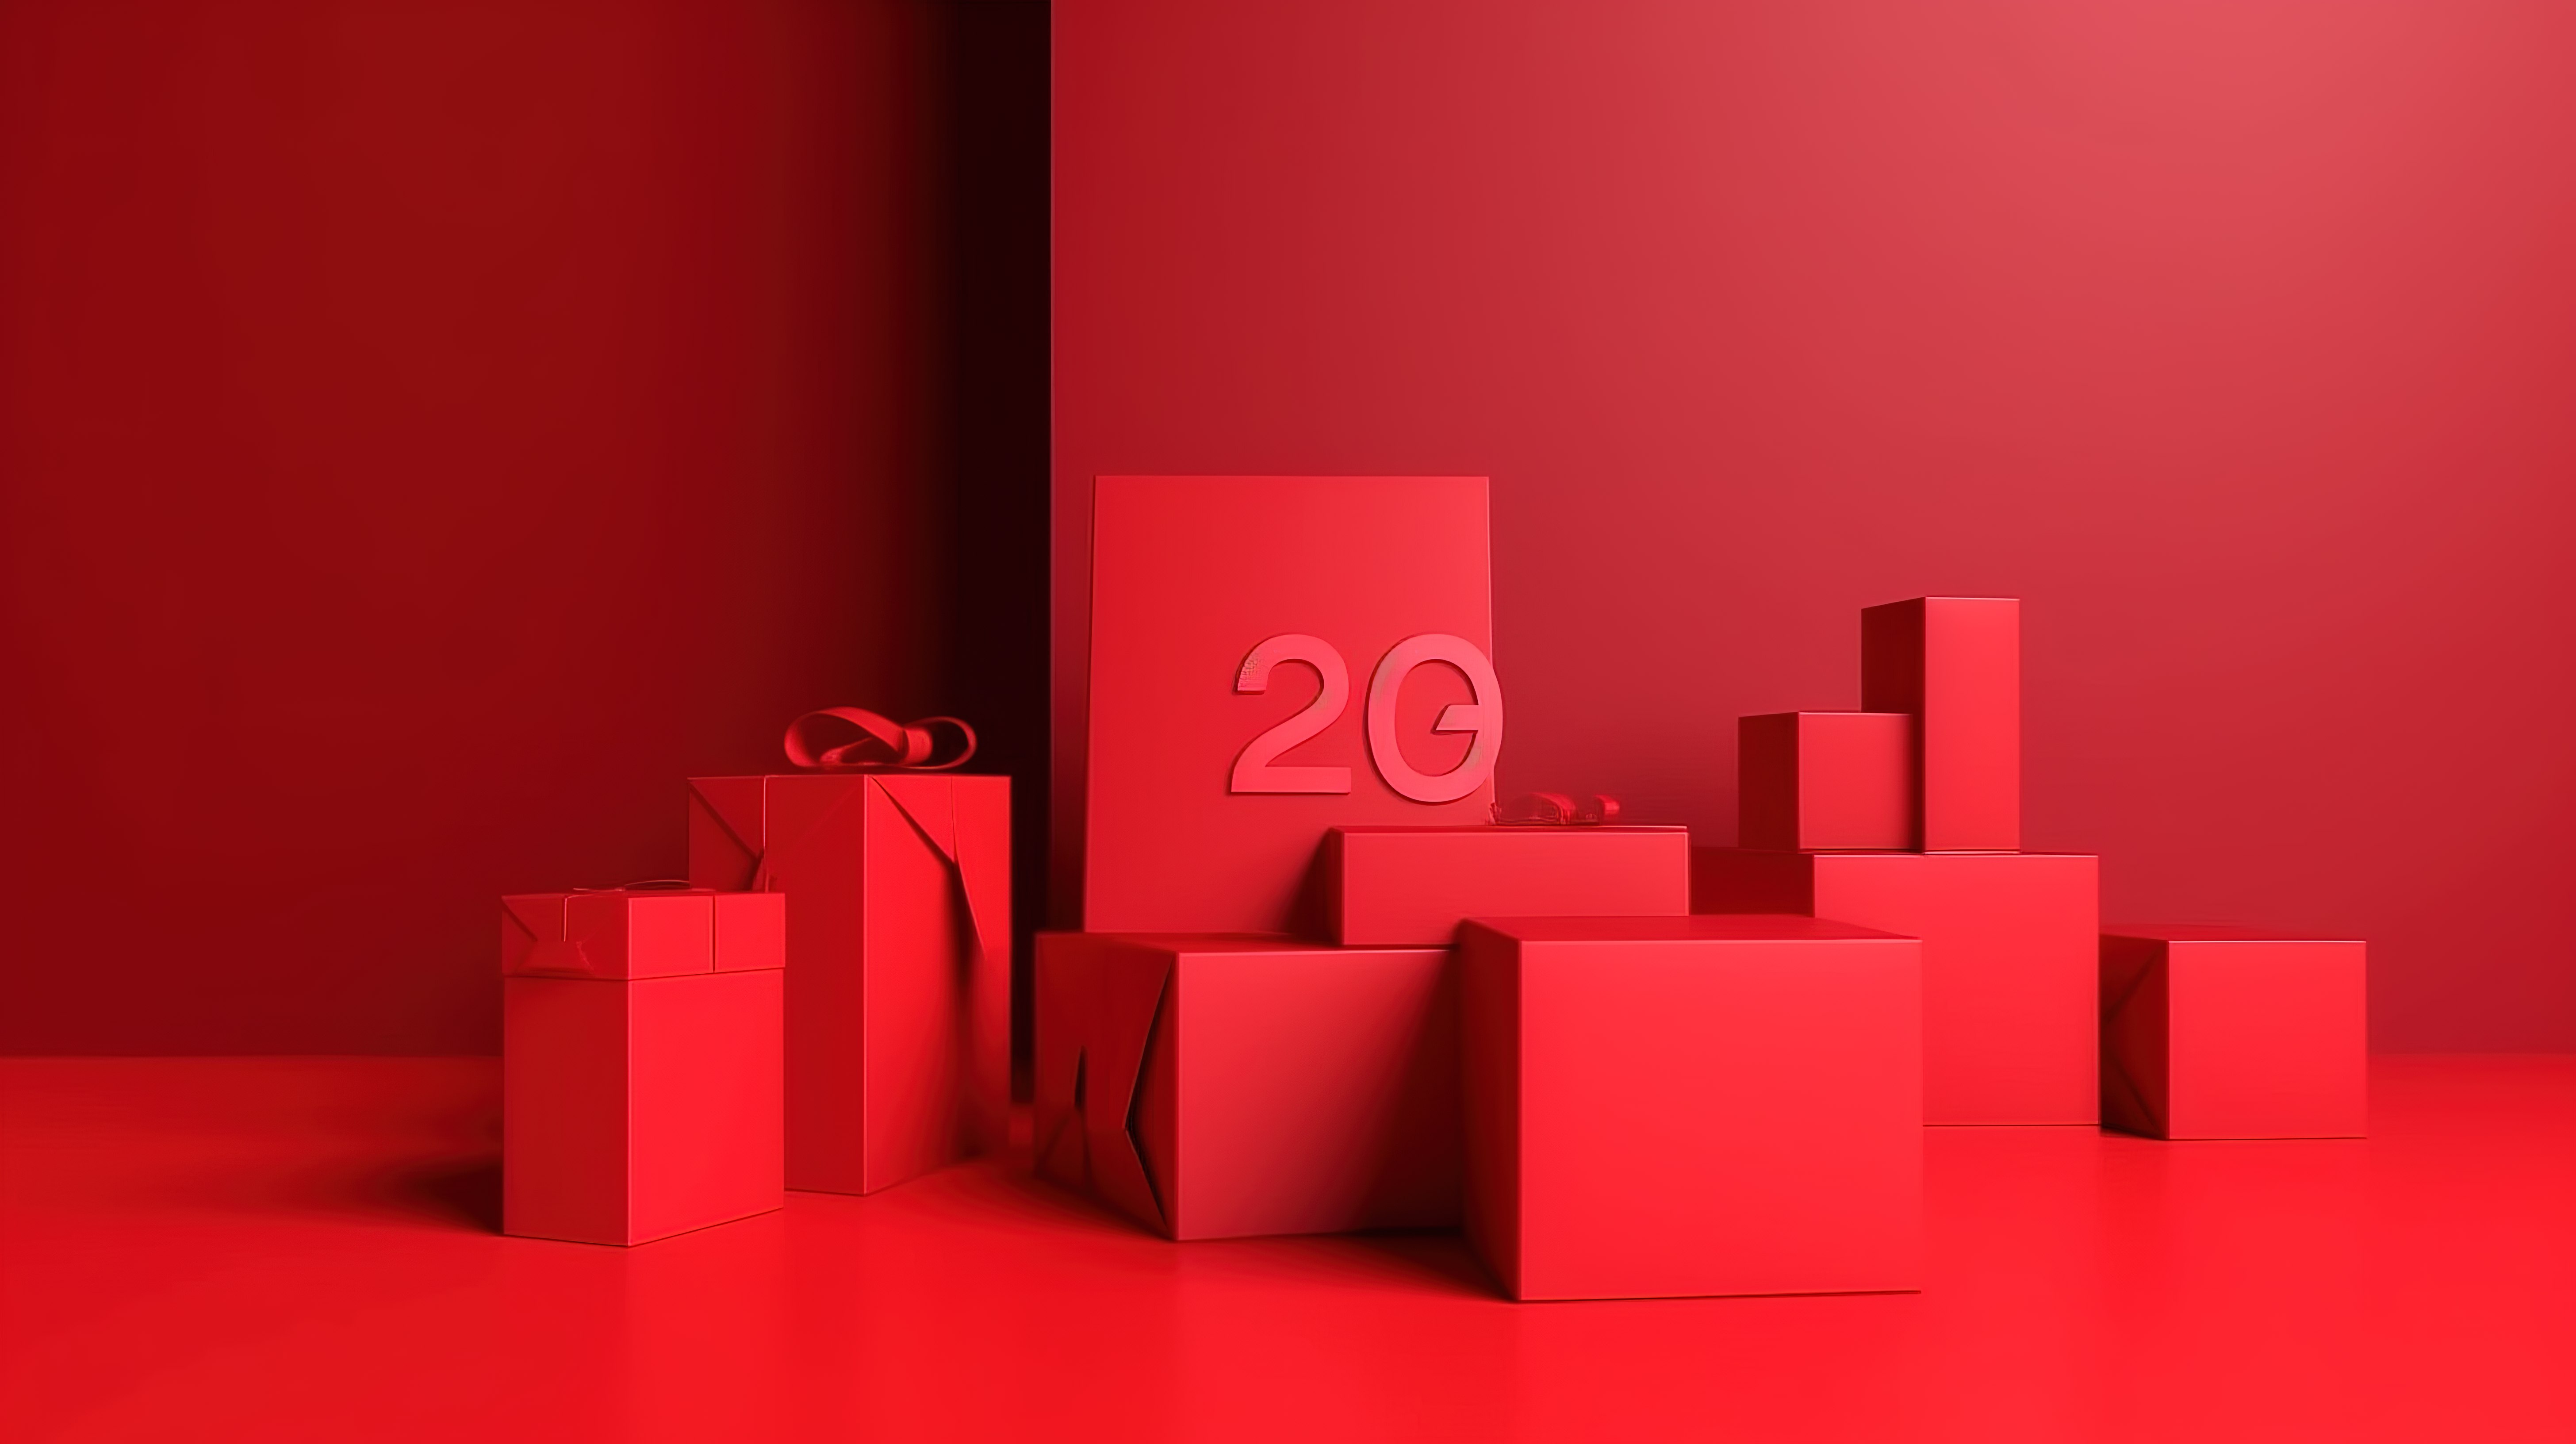 极简主义 3D 渲染产品展示广告集，红色背景和 20图片